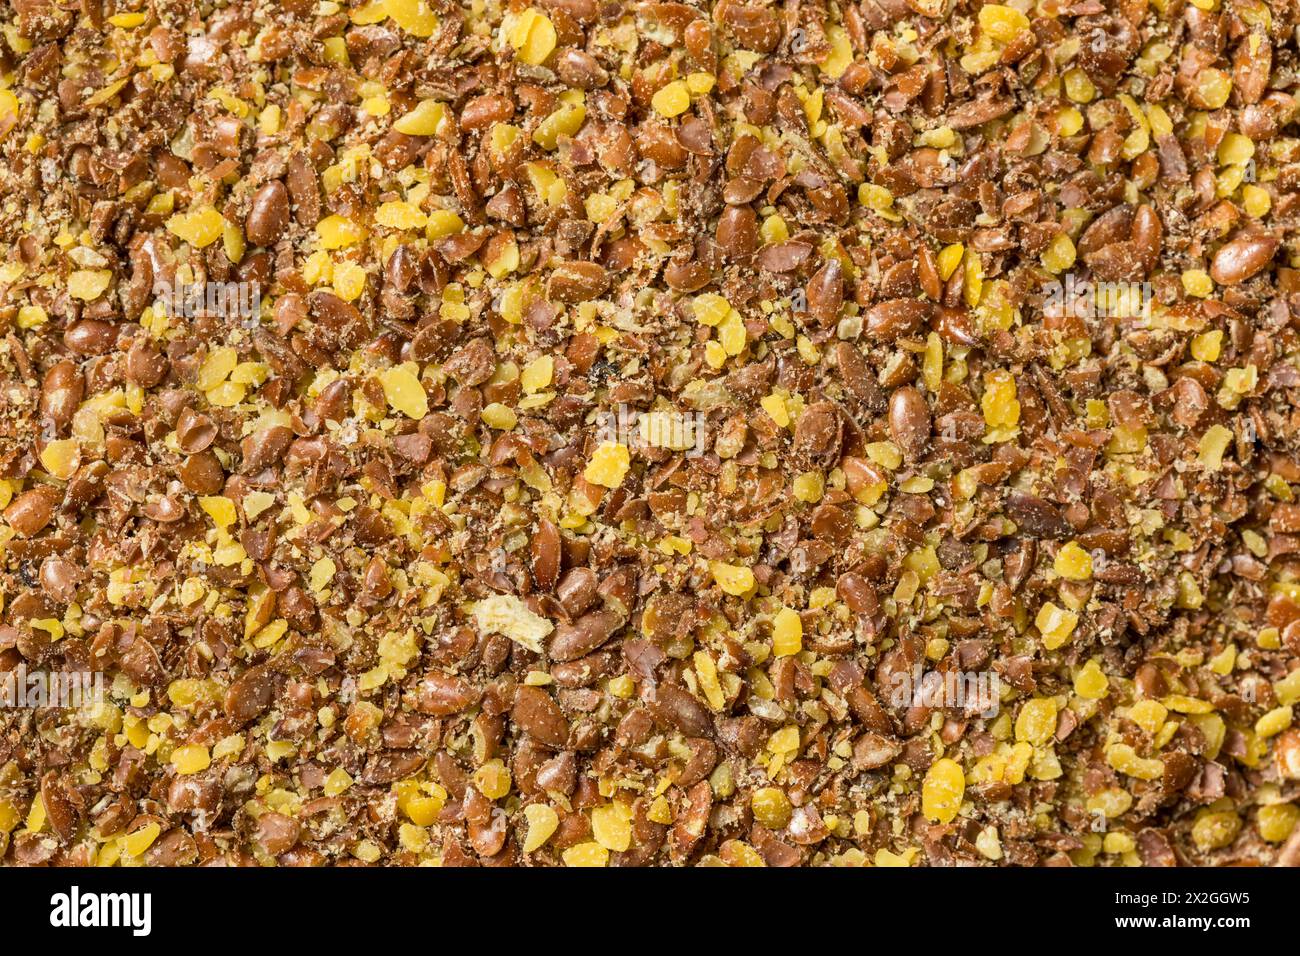 Graines de lin moulues à sec brunes biologiques dans un bol Banque D'Images